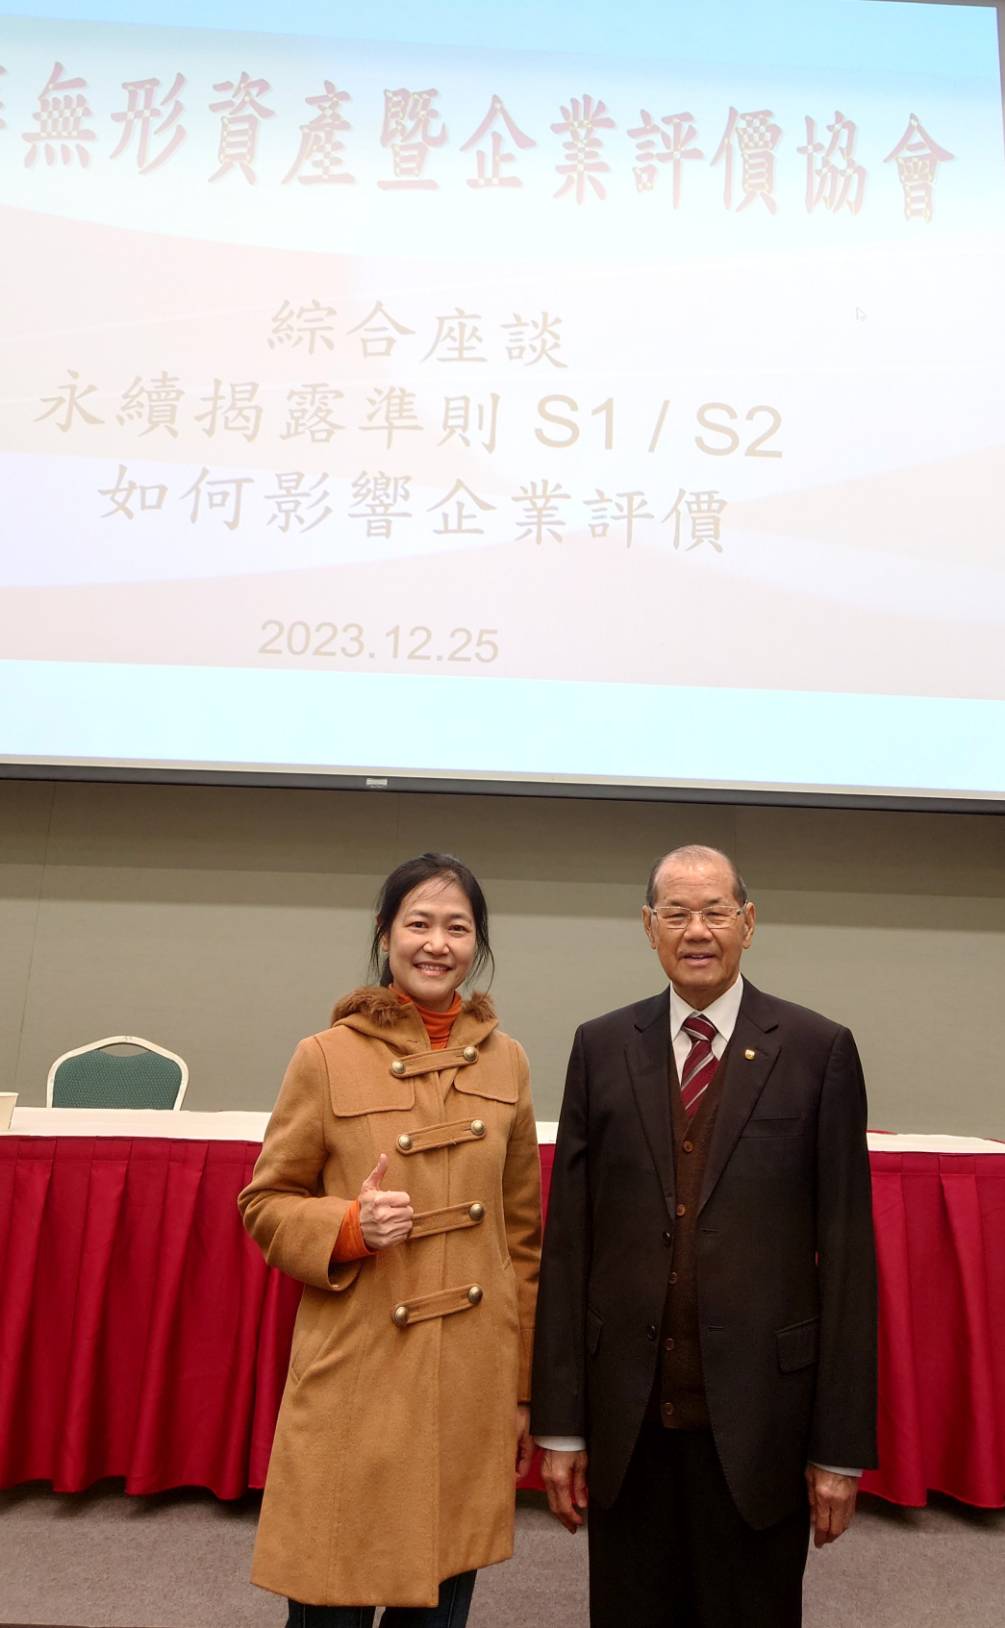 人物: (左至右) 台灣經濟研究社孫智麗社長、政治大學前校長鄭丁旺講座教授